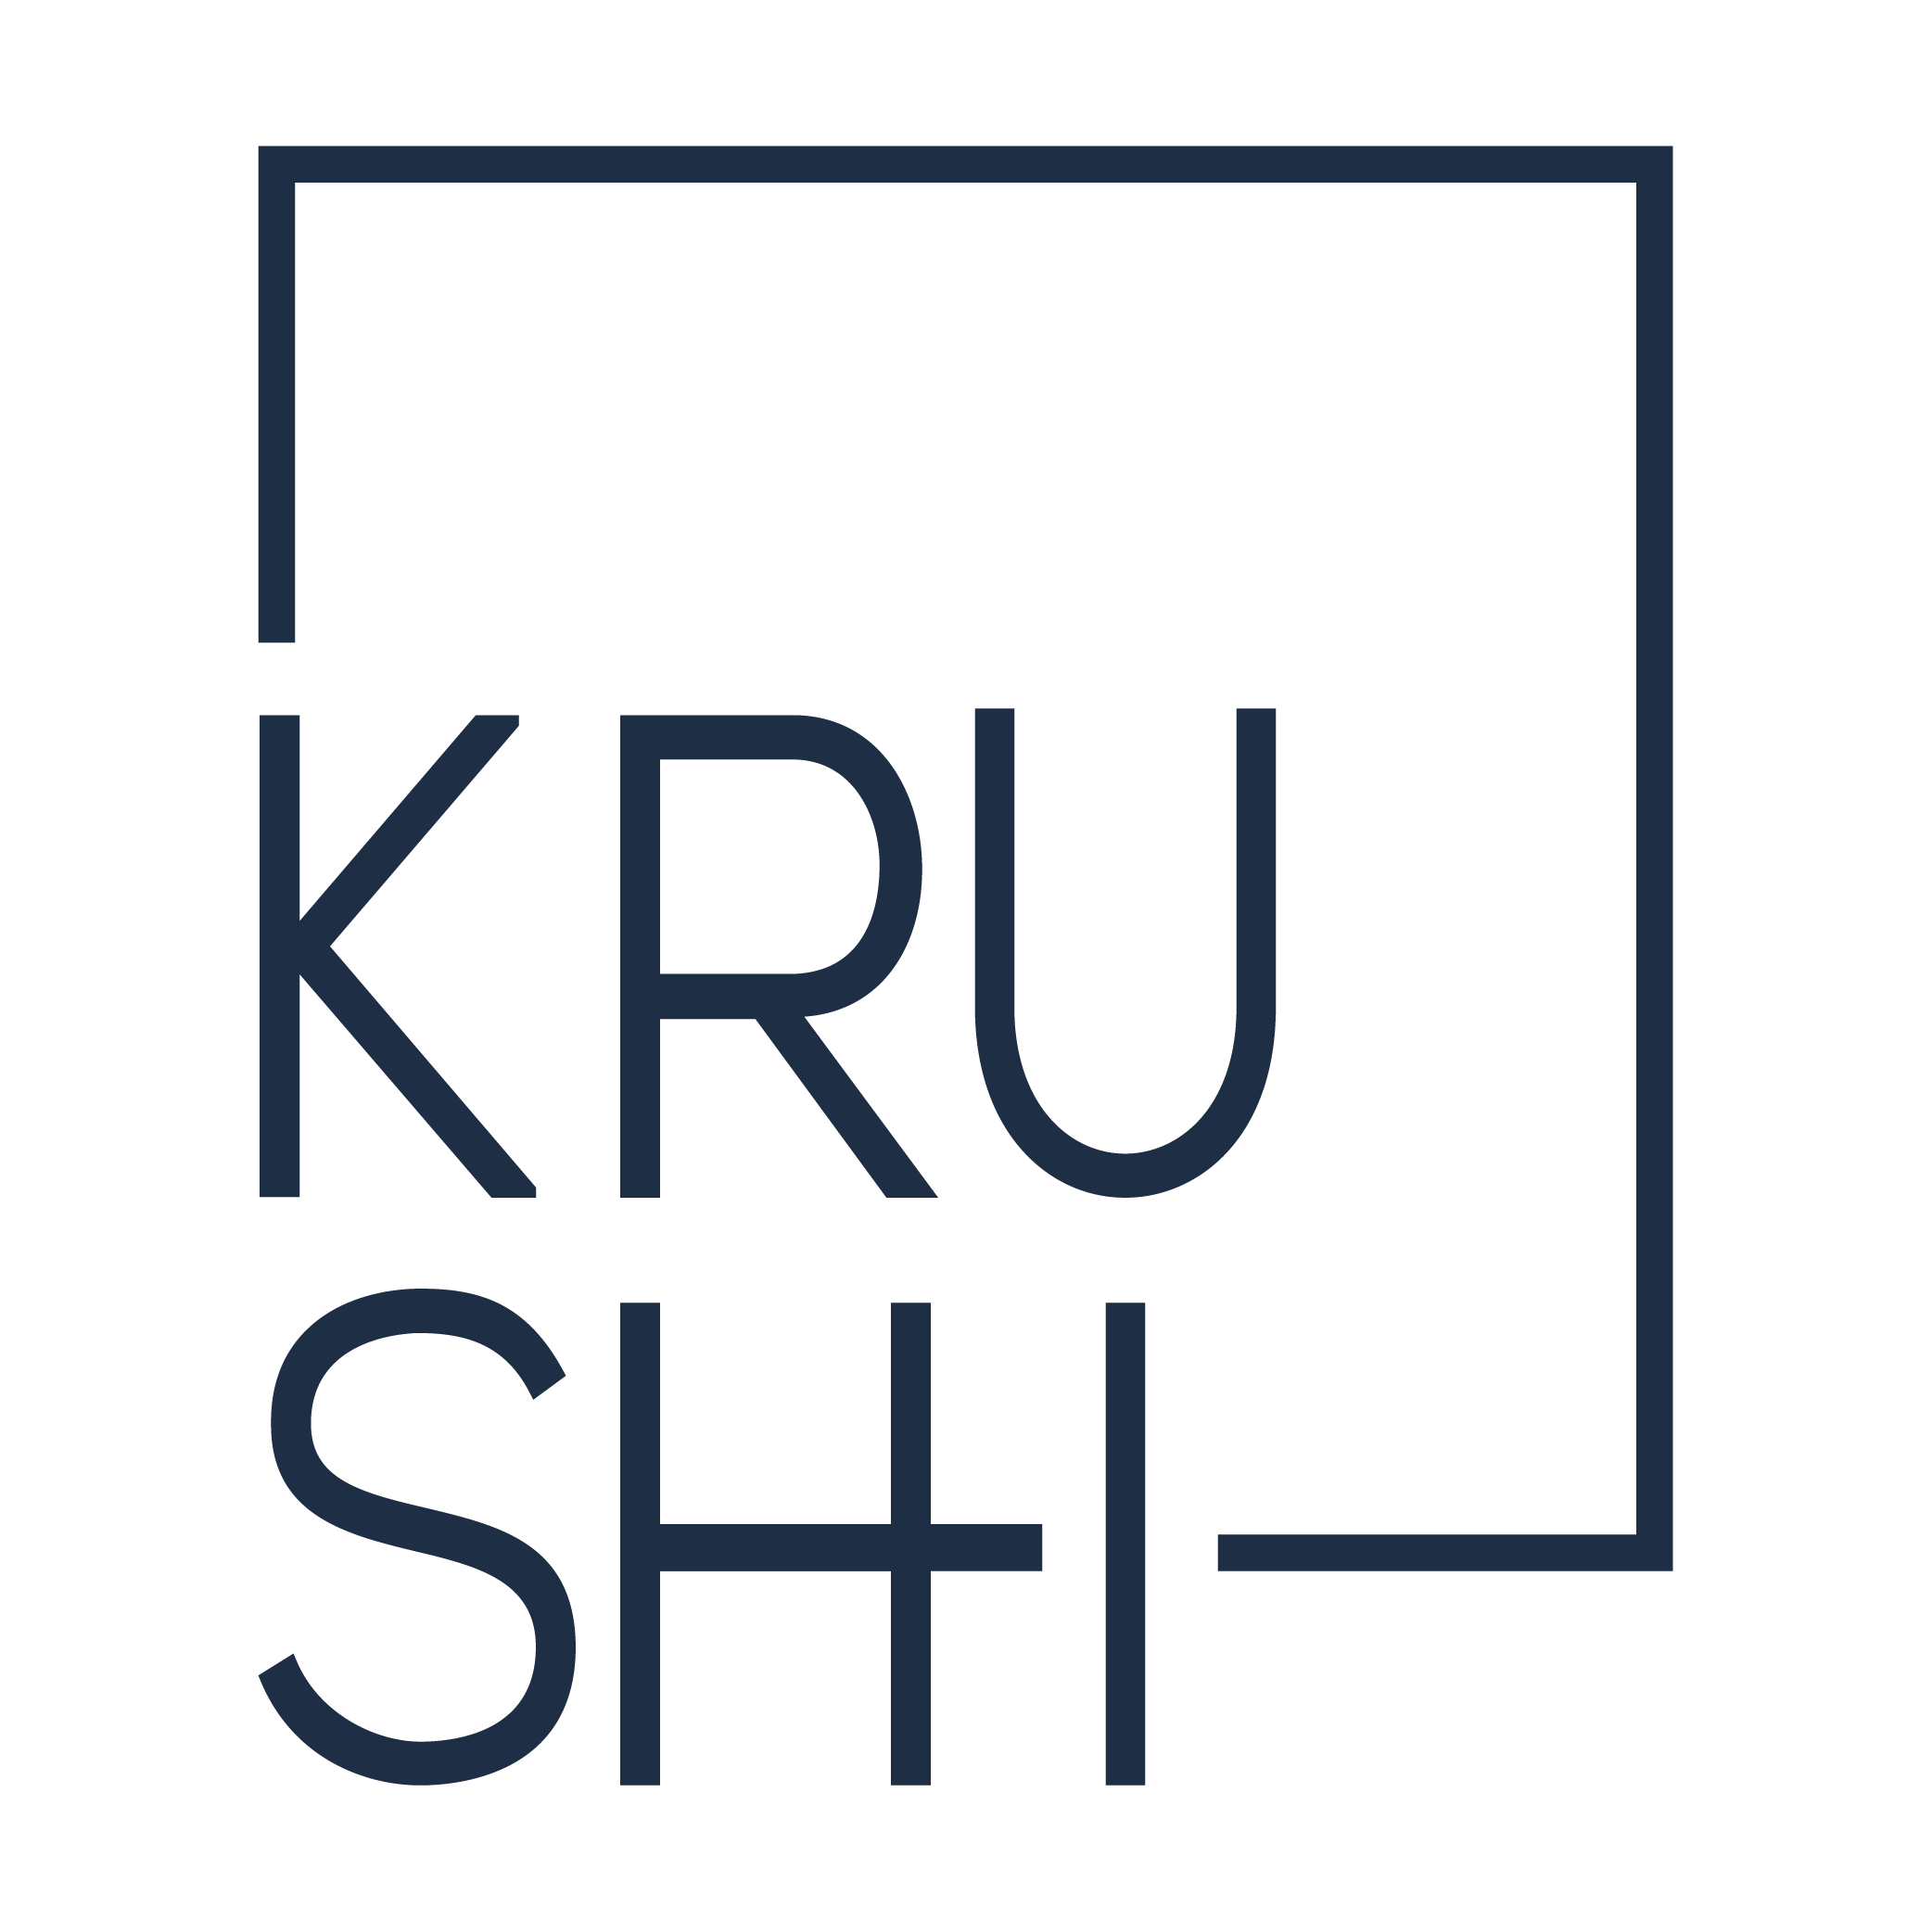 Krushi